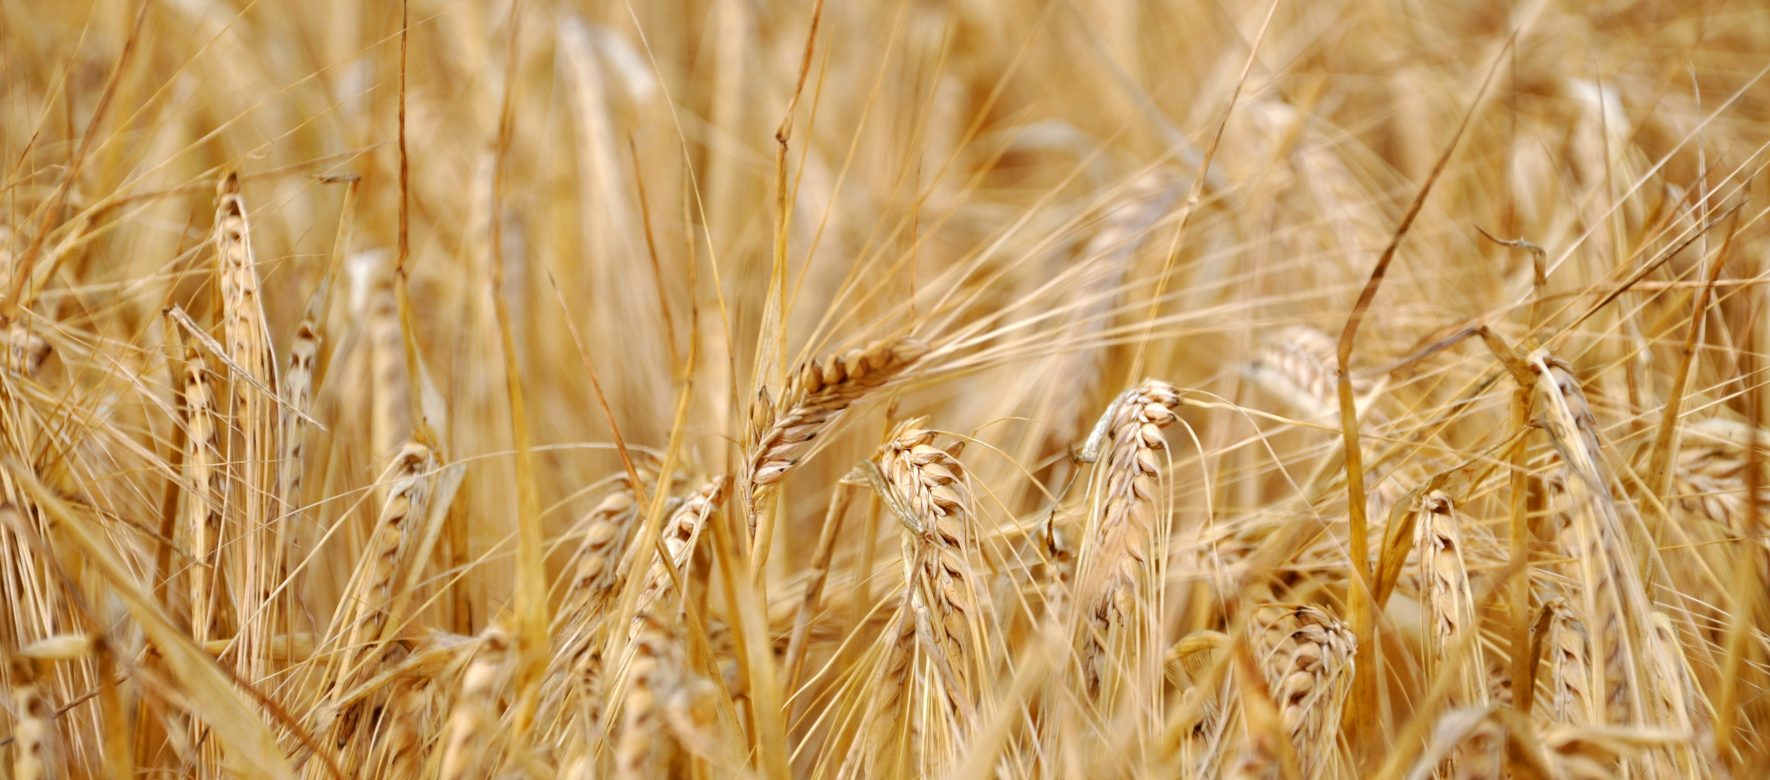 L'Égypte compte acquérir 4 millions de tonnes de blé pour sécuriser ses importations 1